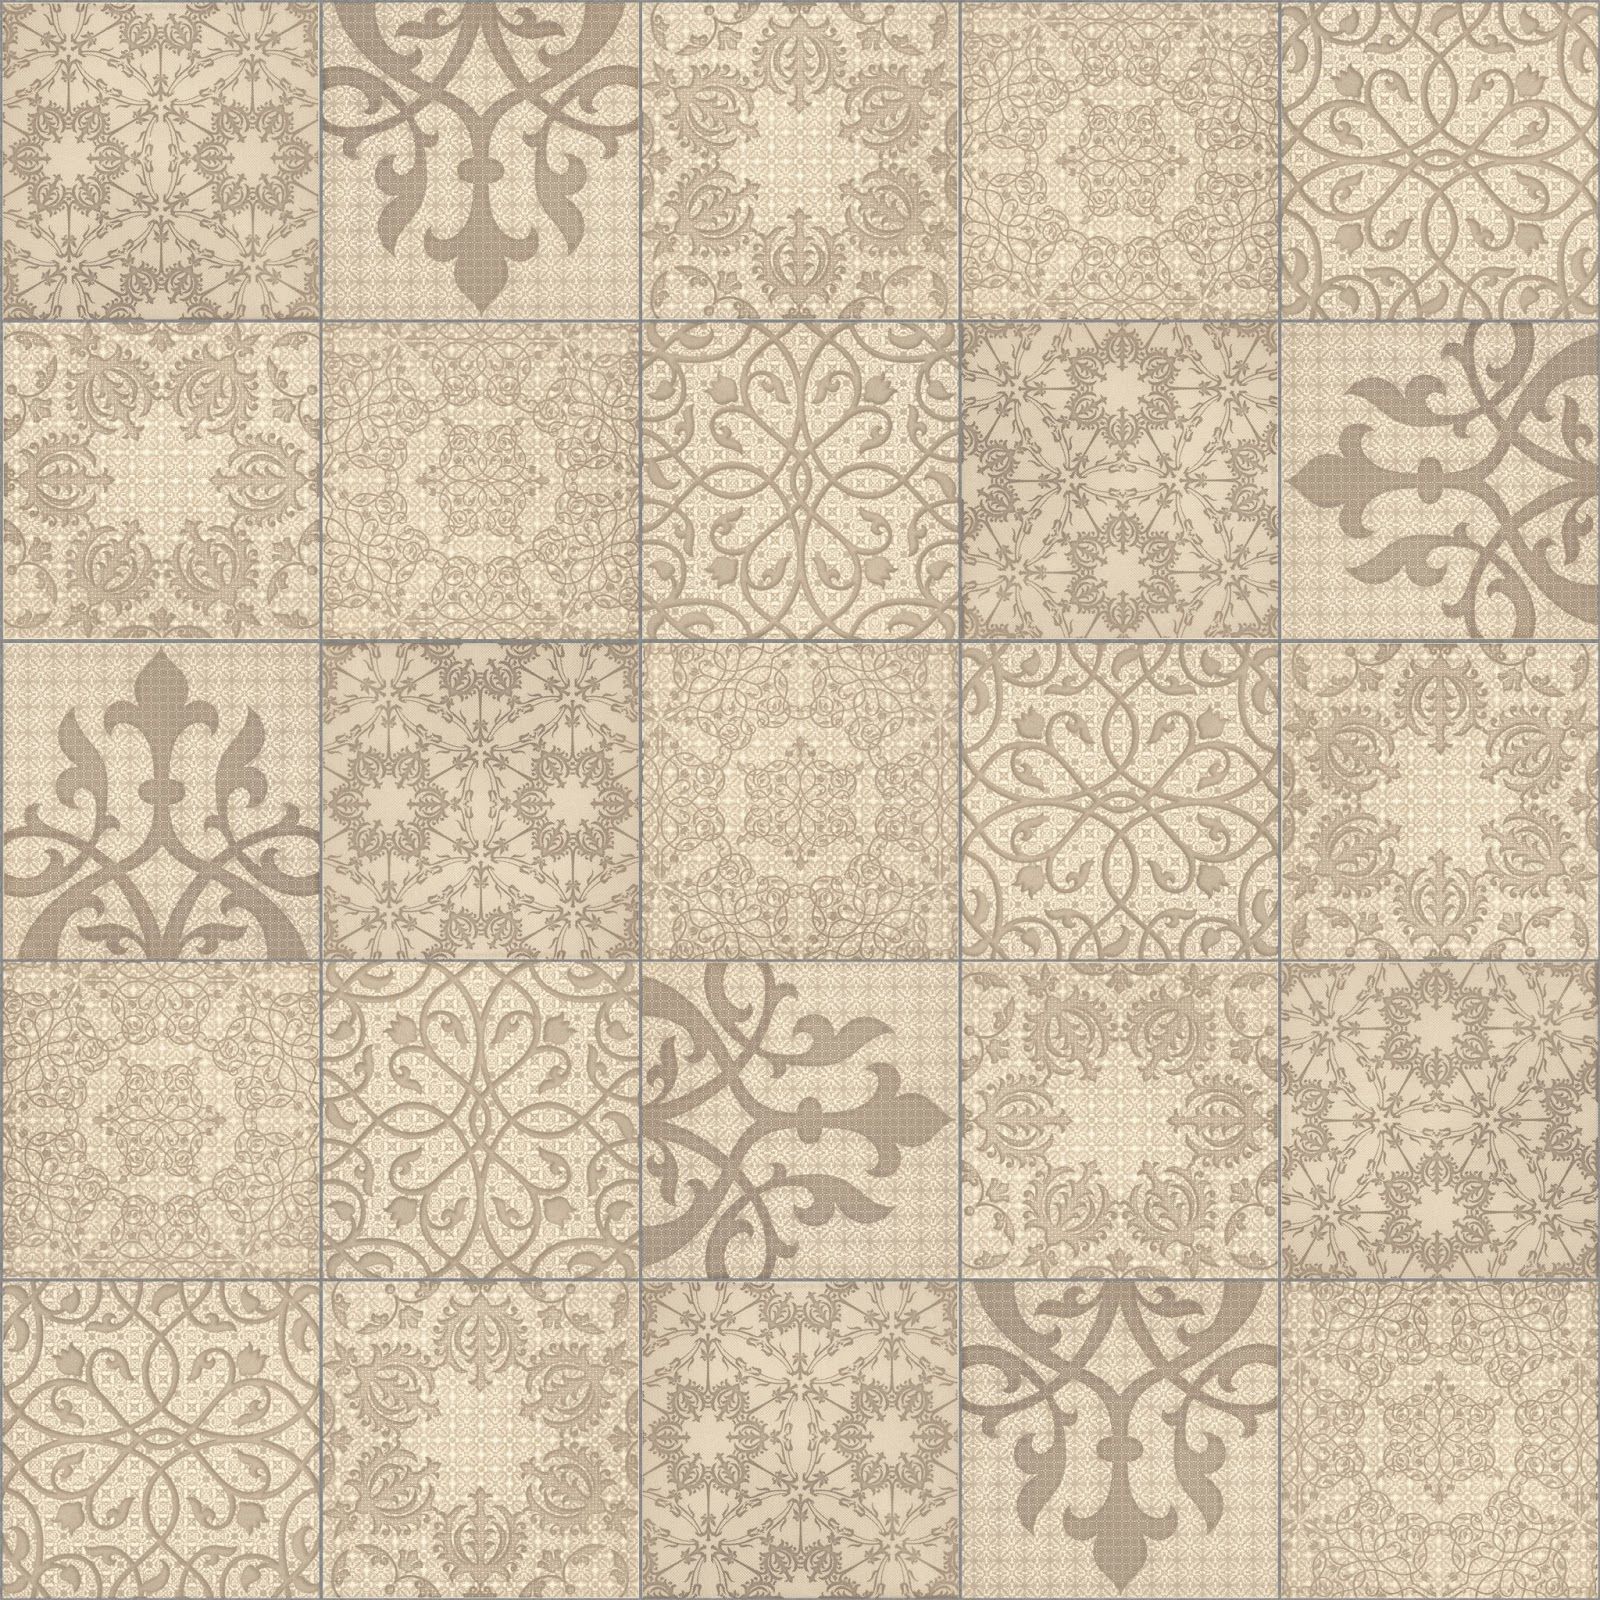 Ceramic Tiles Texture Design Ideas 14444 Floor Ideas Design | haaz ...